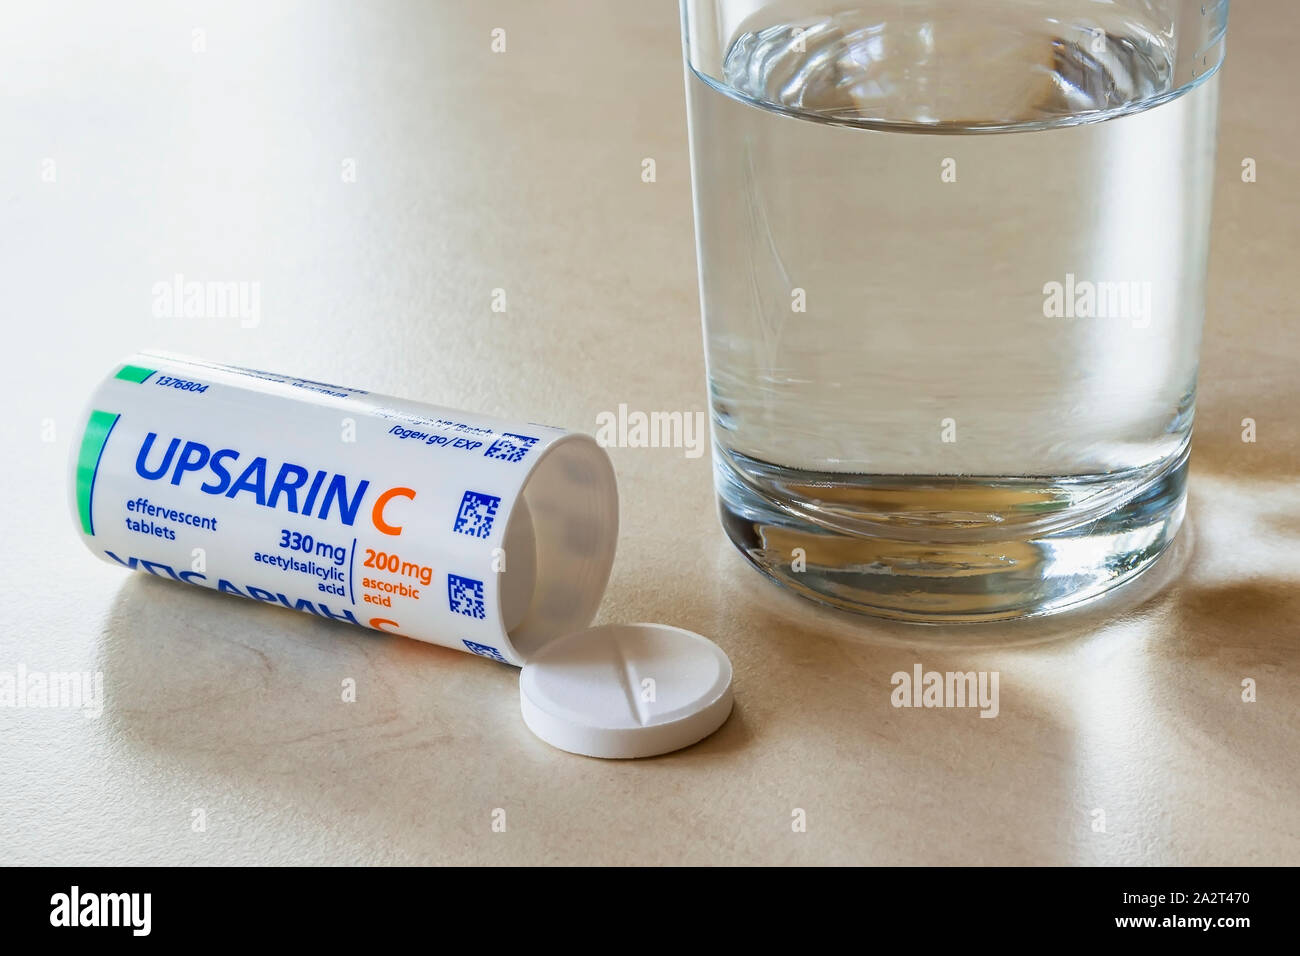 Varna, Bulgarien, Oktober 02, 2019. Upsarin C fiebersenkende Tabletten und ein Glas Wasser auf einem weißen Tisch. Löslichen Brausetabletten Aspirin mit Vitamin C. Stockfoto